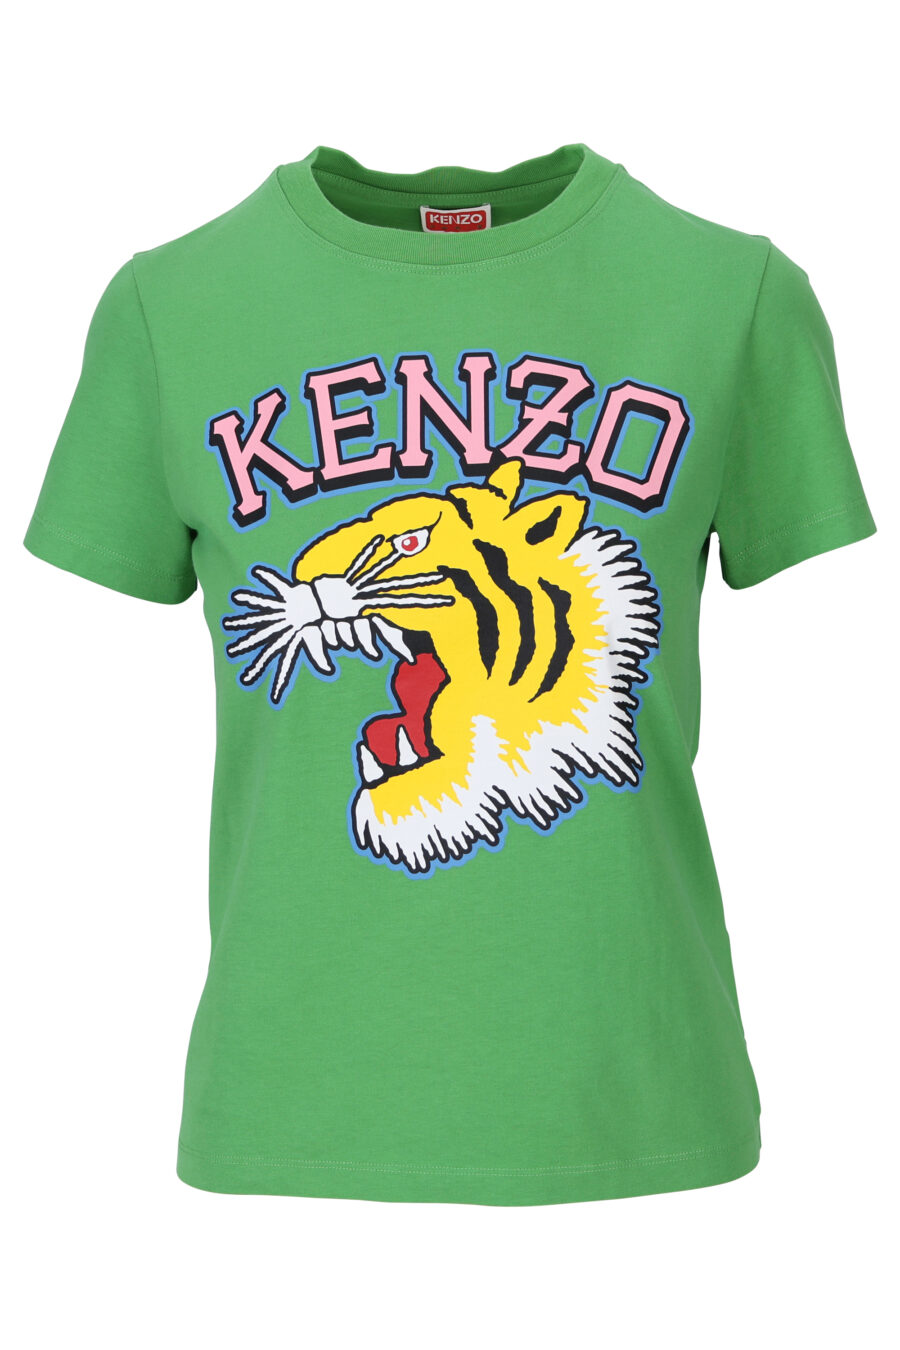 T-shirt verde com o logótipo "tigre" bordado - 3612230552524